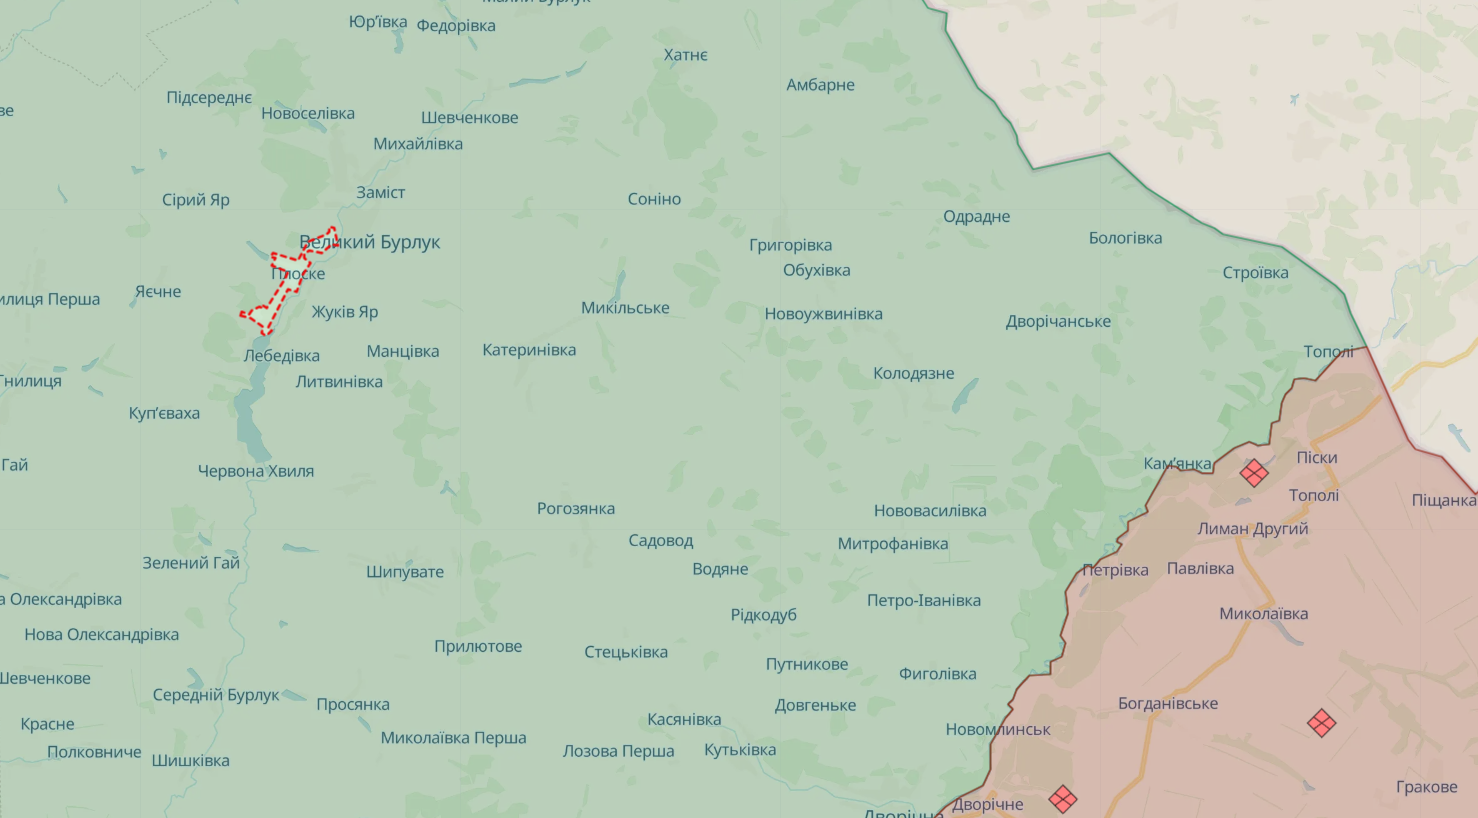 Wioska Ploske w gminie Wełykoburlutskiej również znalazła się pod ostrzałem wroga